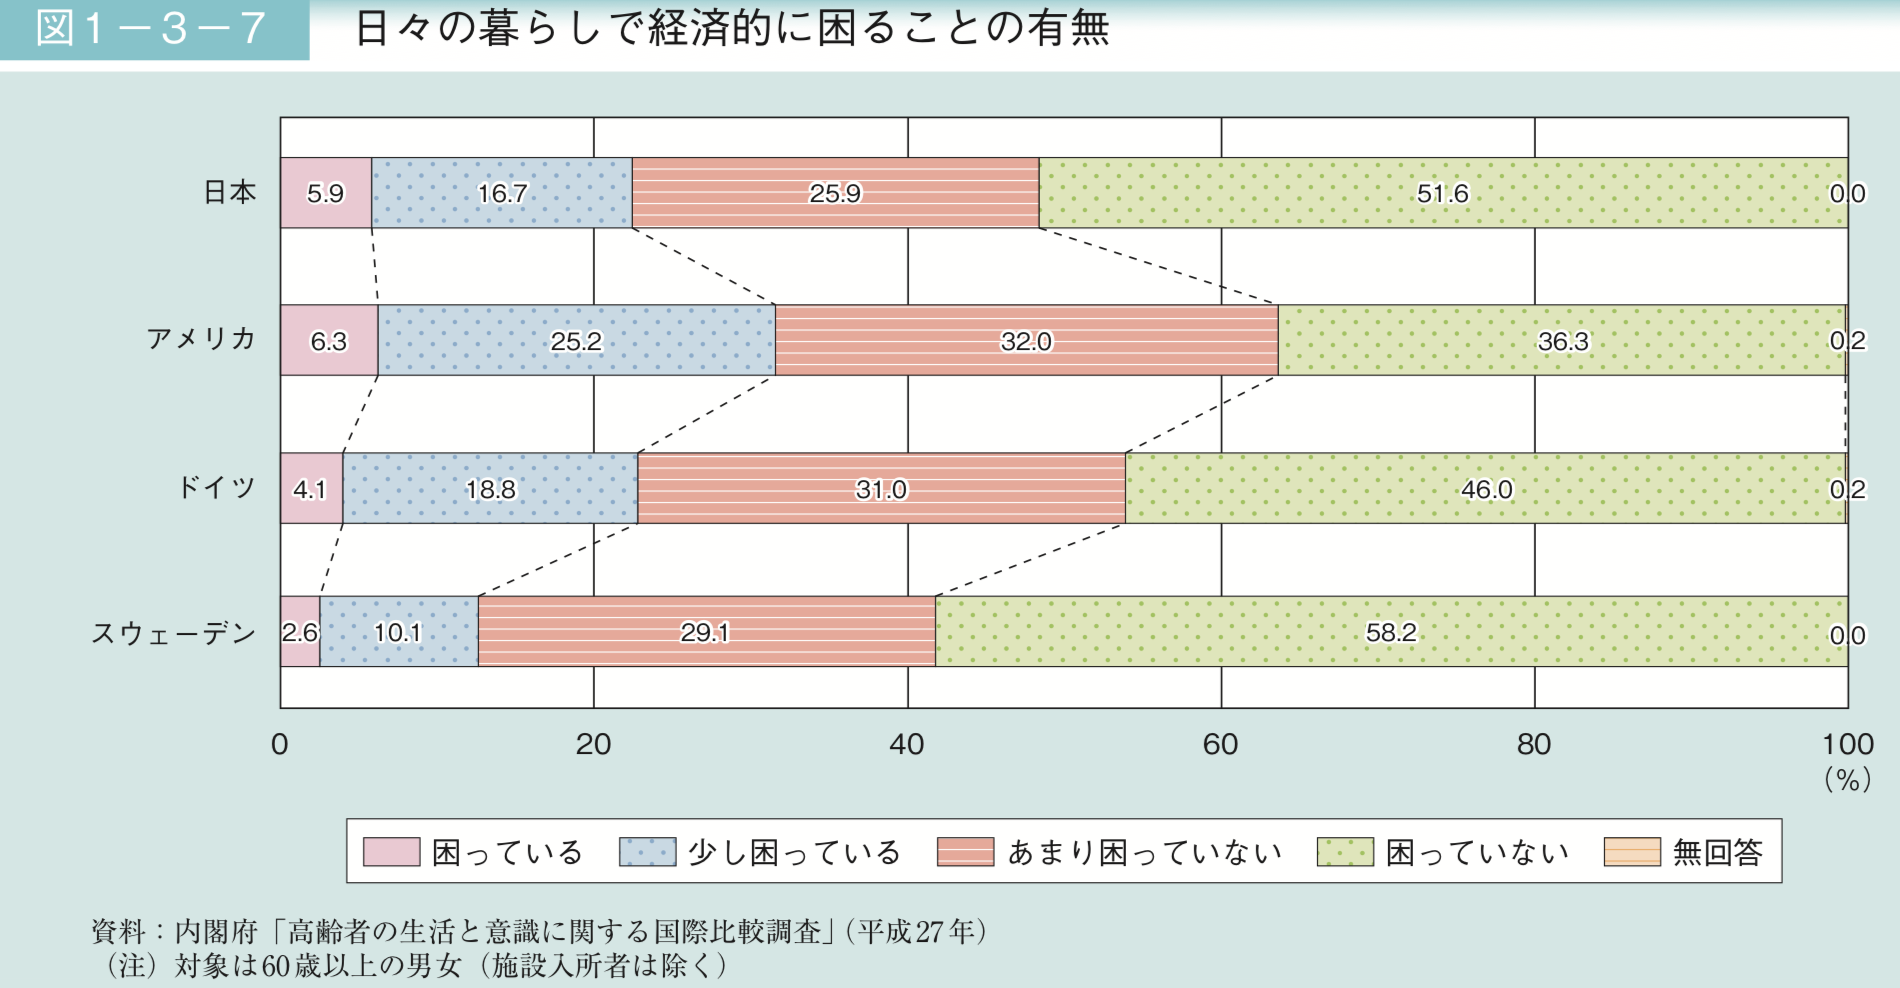 日本で老後生活で経済的に困る人の割合